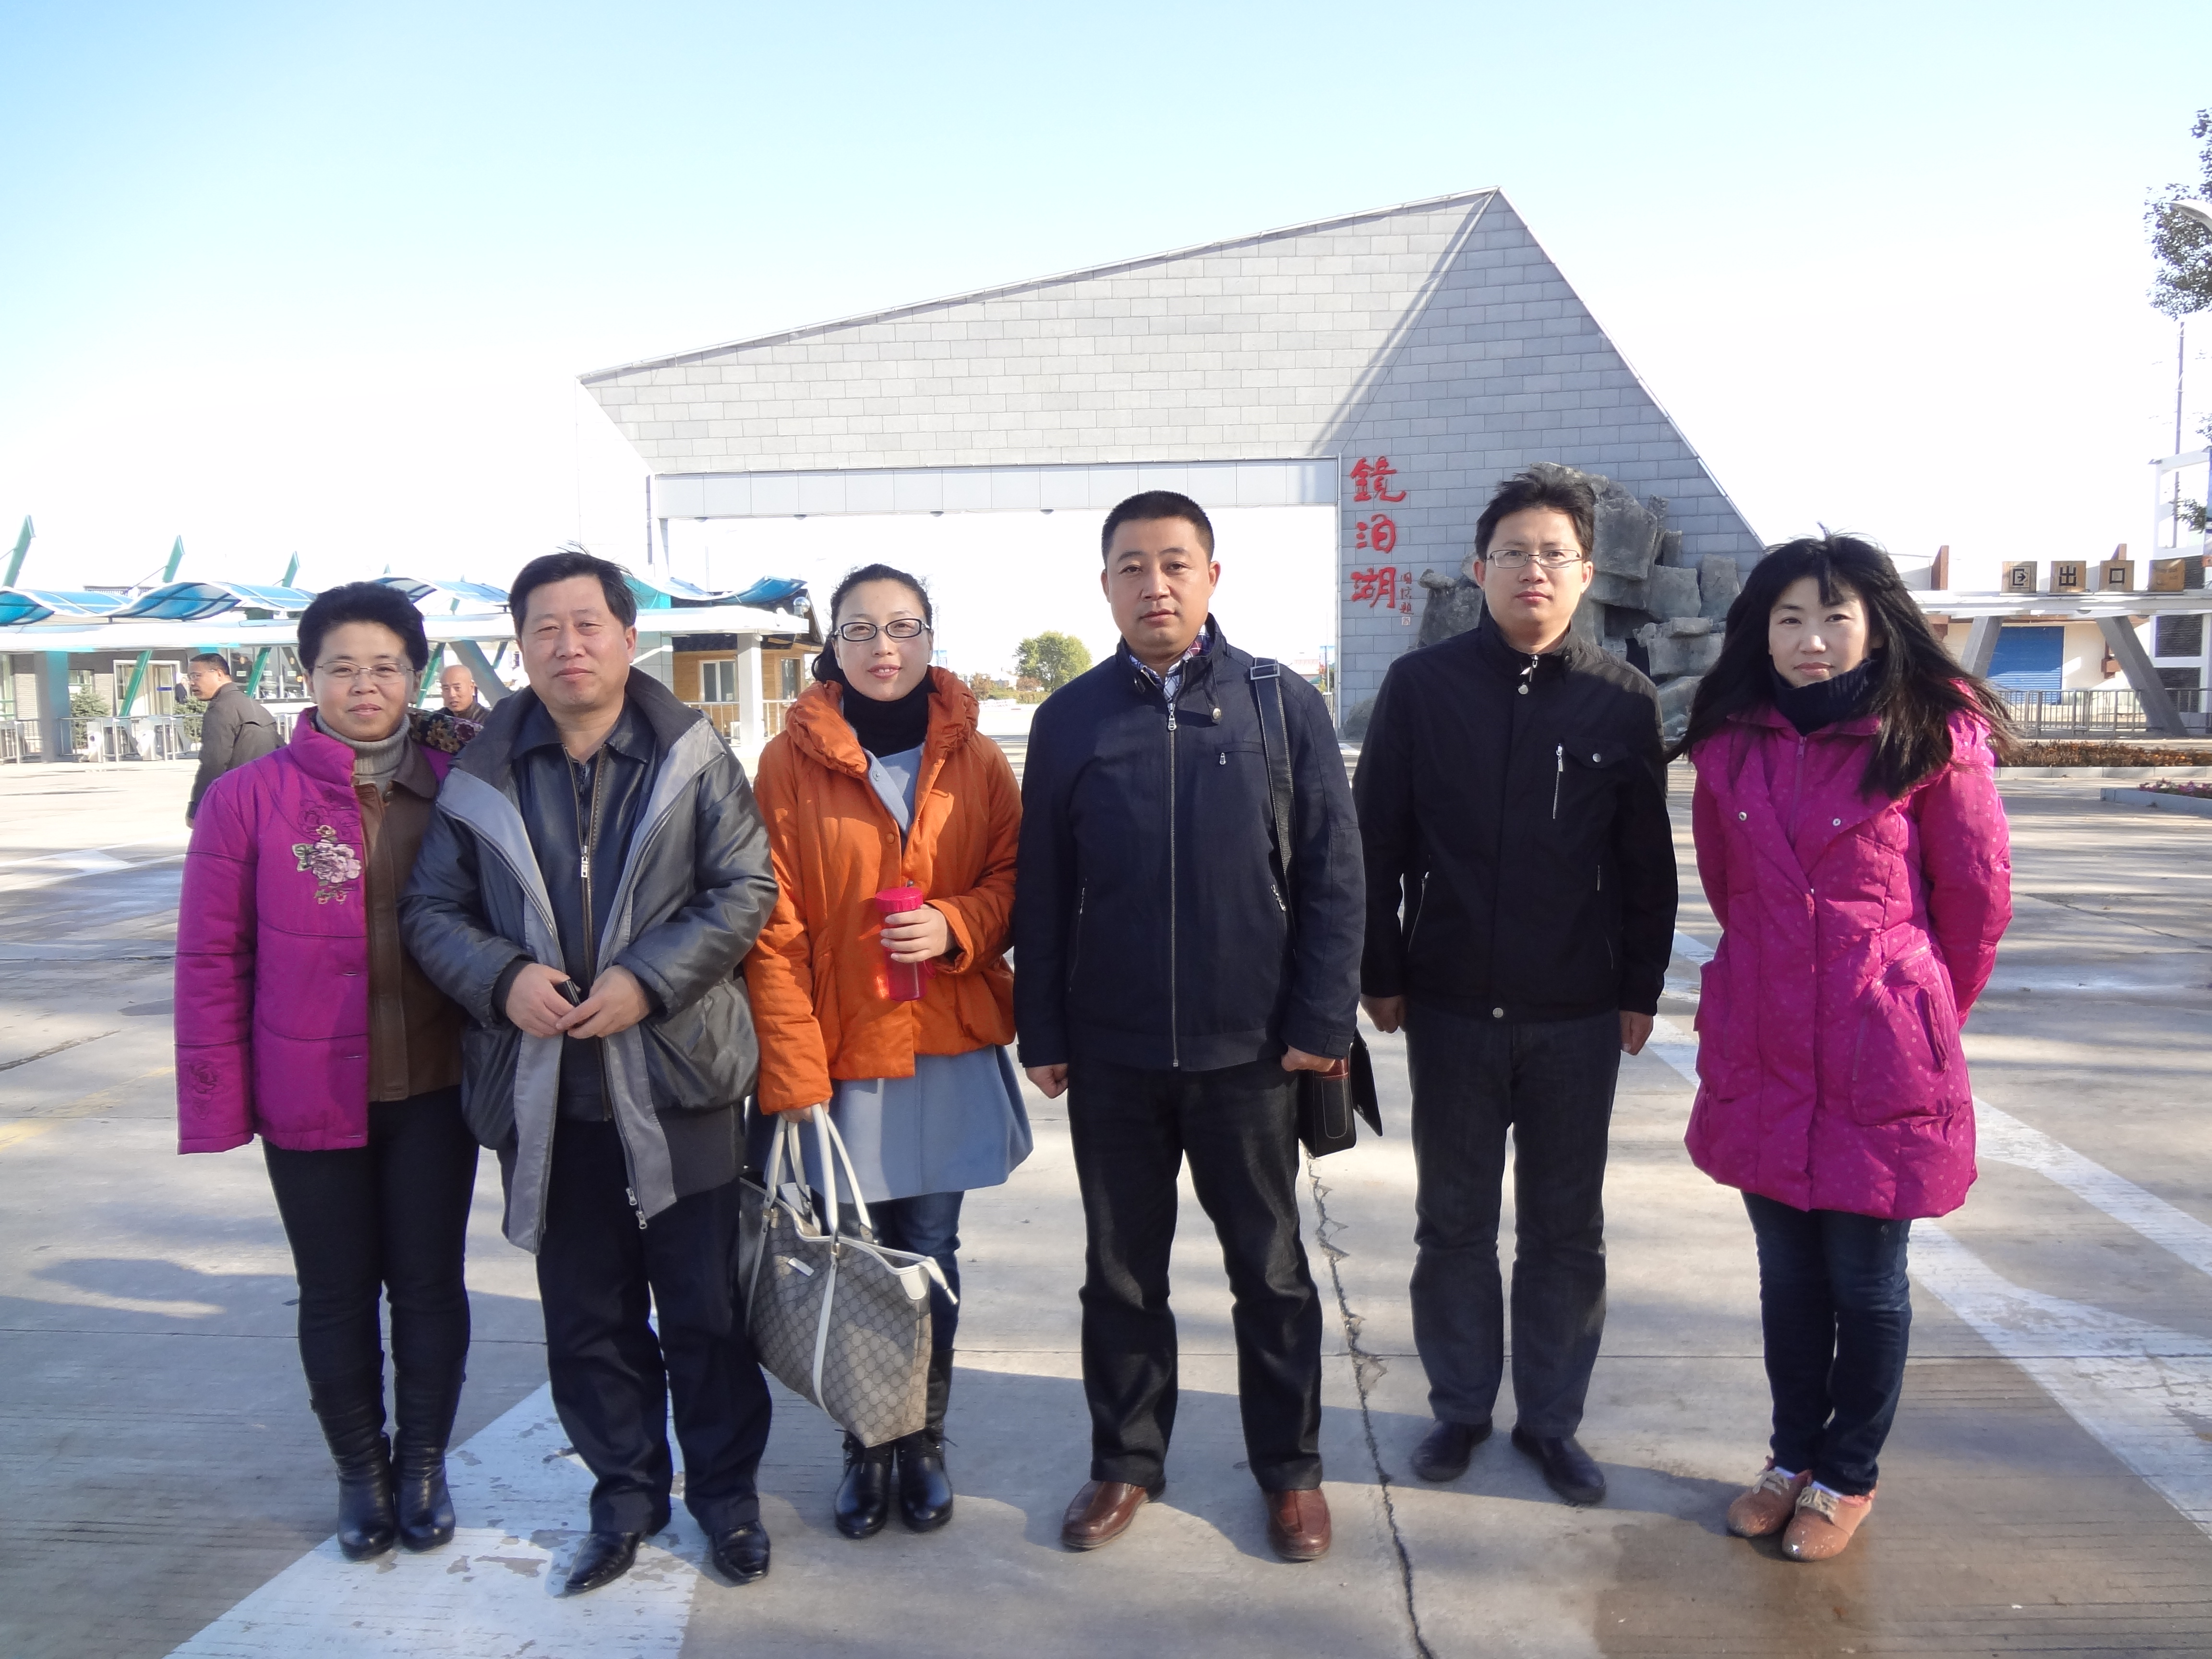 黑龙江省2012年文学学会年会参会人员2，从左至右为任雅玲、王占峰、王向荣、林超然、姜超、高岩老师。